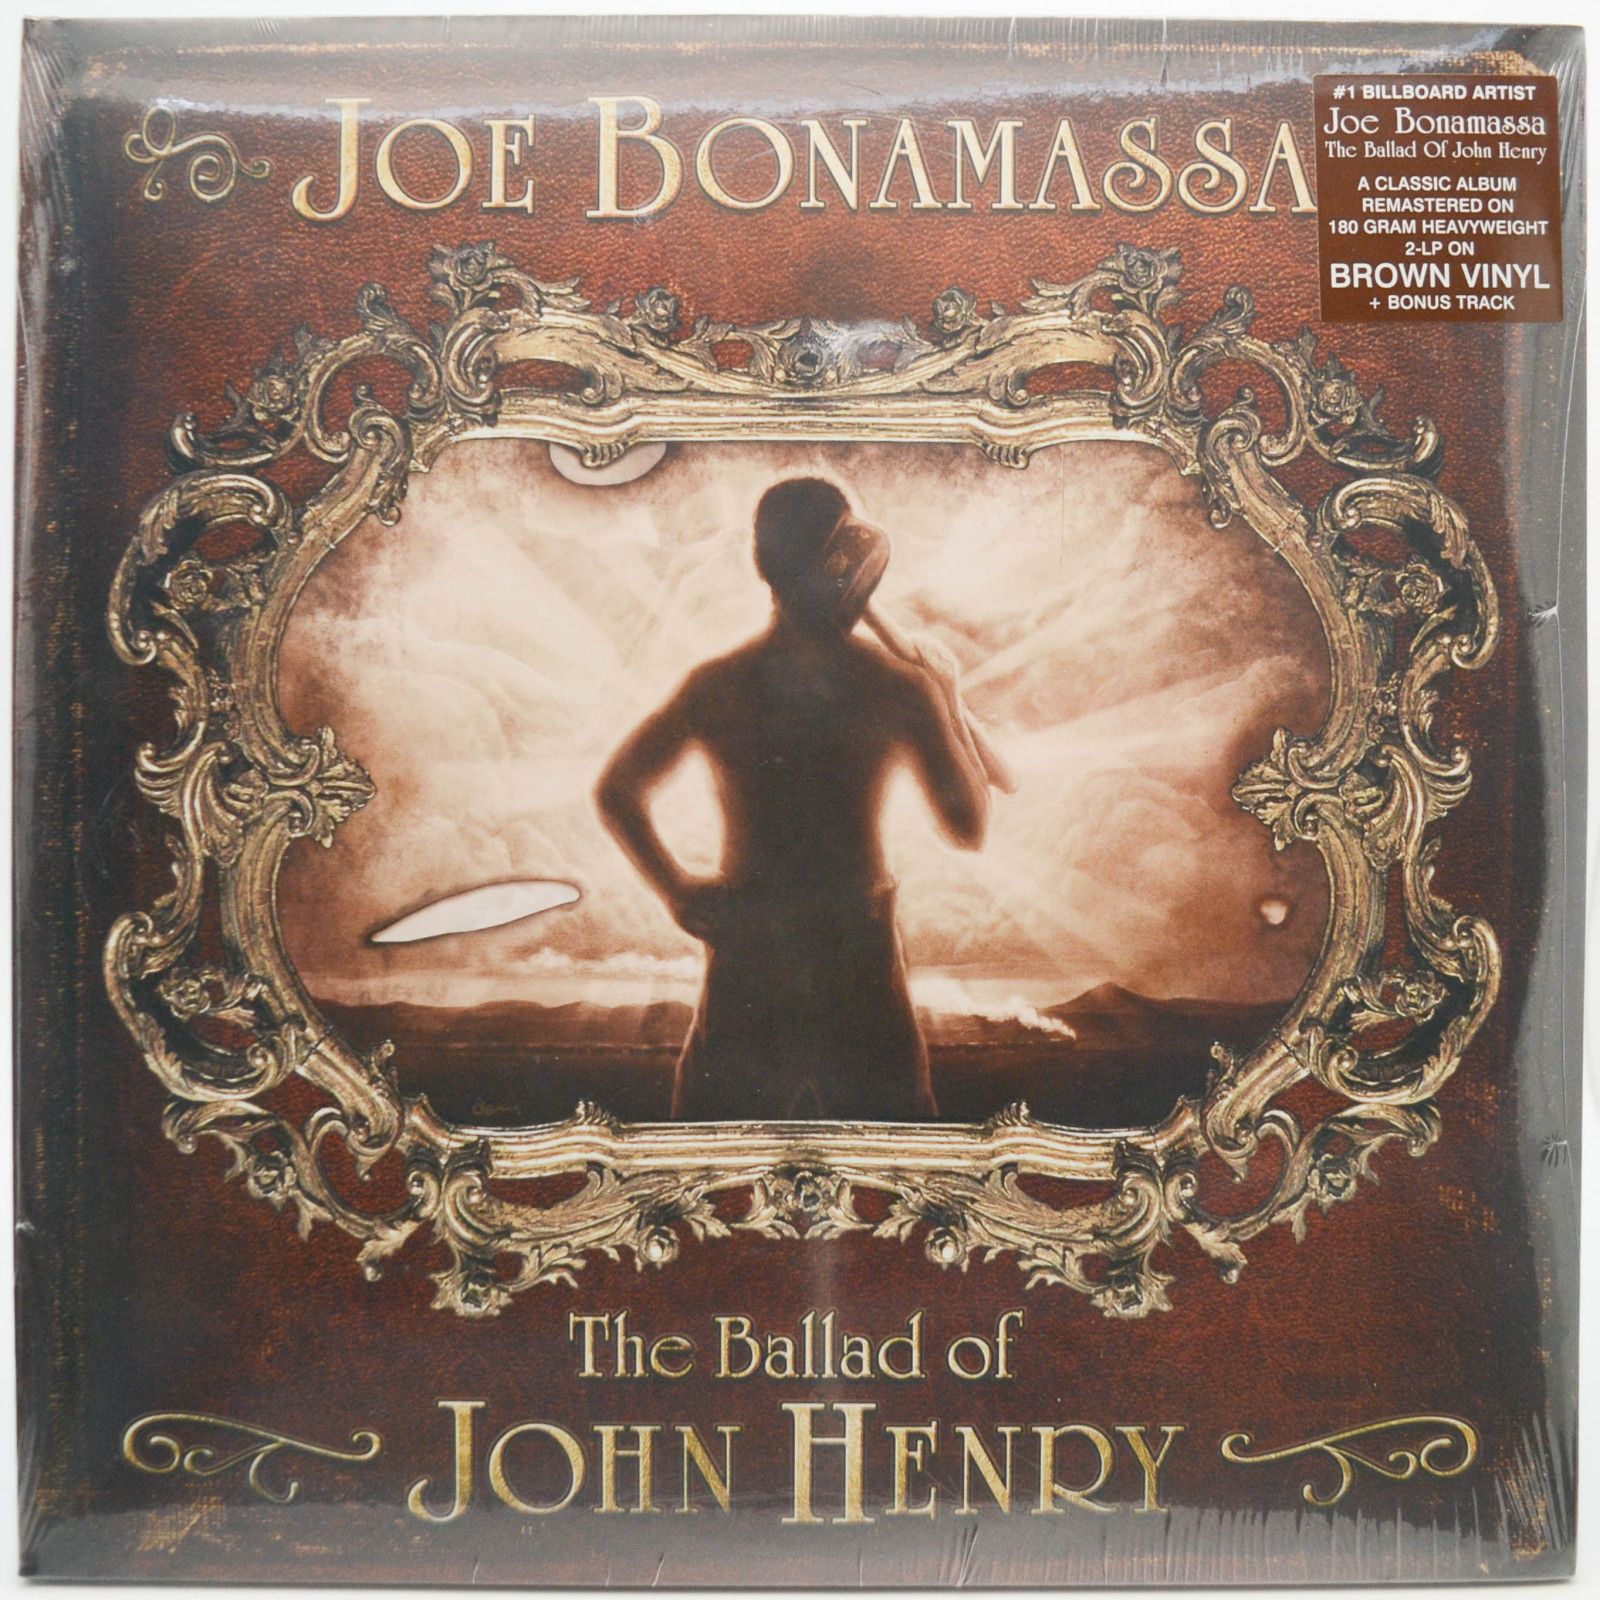 Joe Bonamassa — The Ballad Of John Henry (2LP), 2009